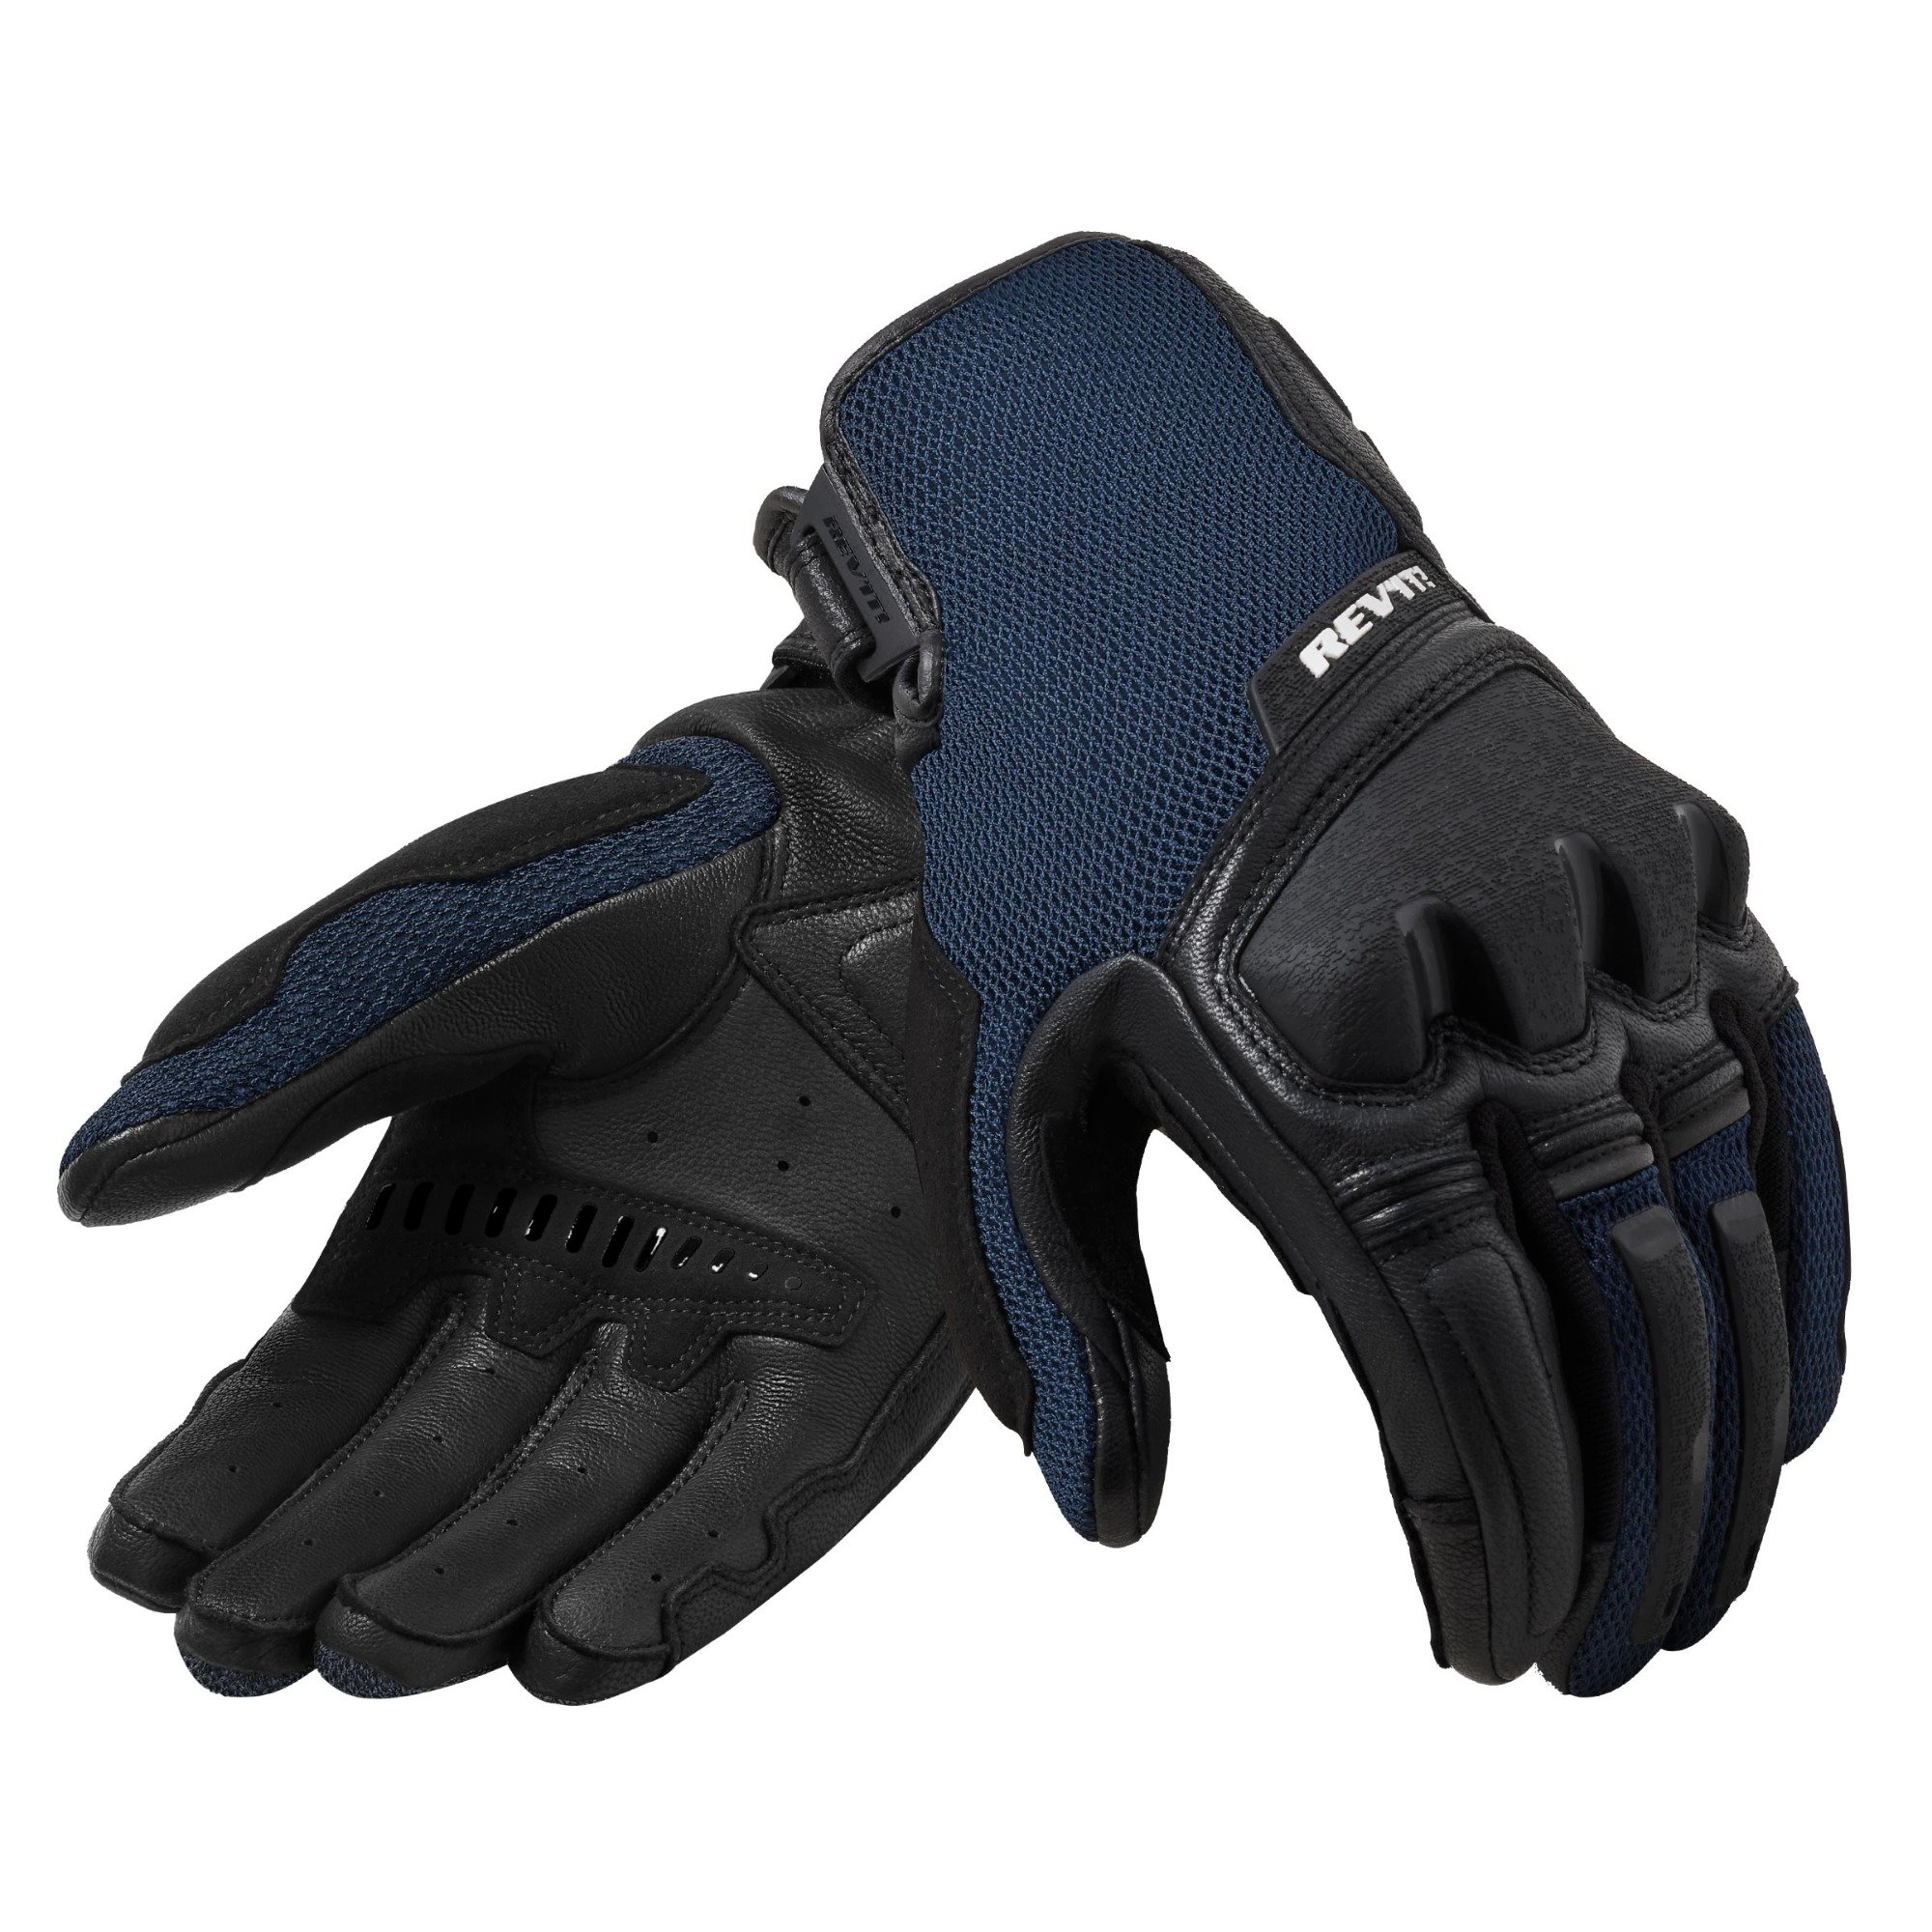 Image of REV'IT! Duty Schwarz Blau Handschuhe Größe XL